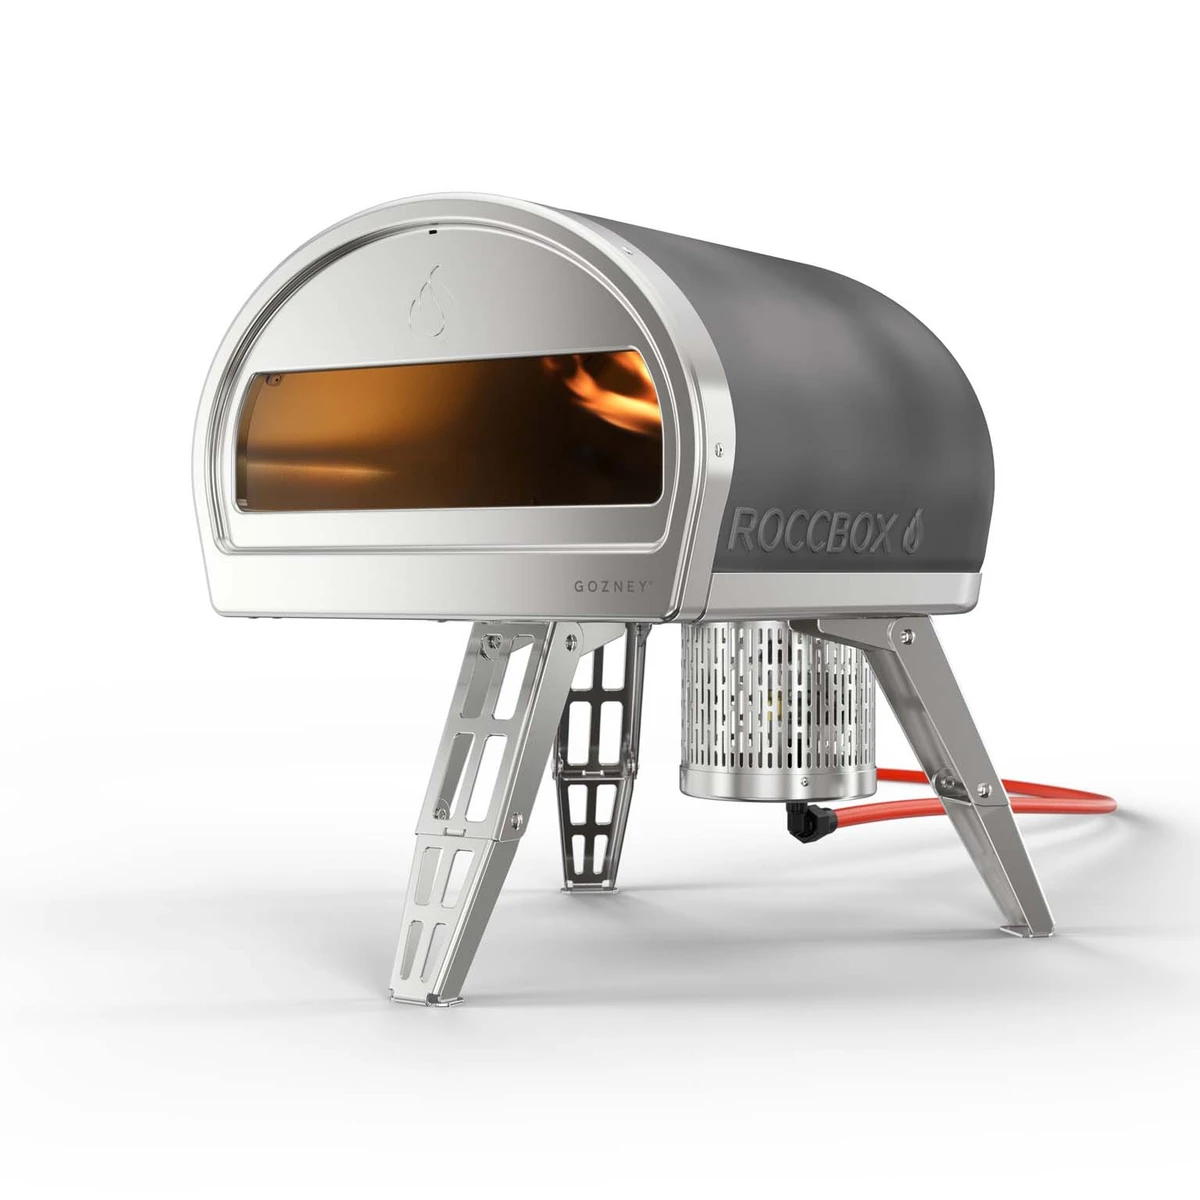 Gozney Roccbox Pizza Oven - Grey - image 2